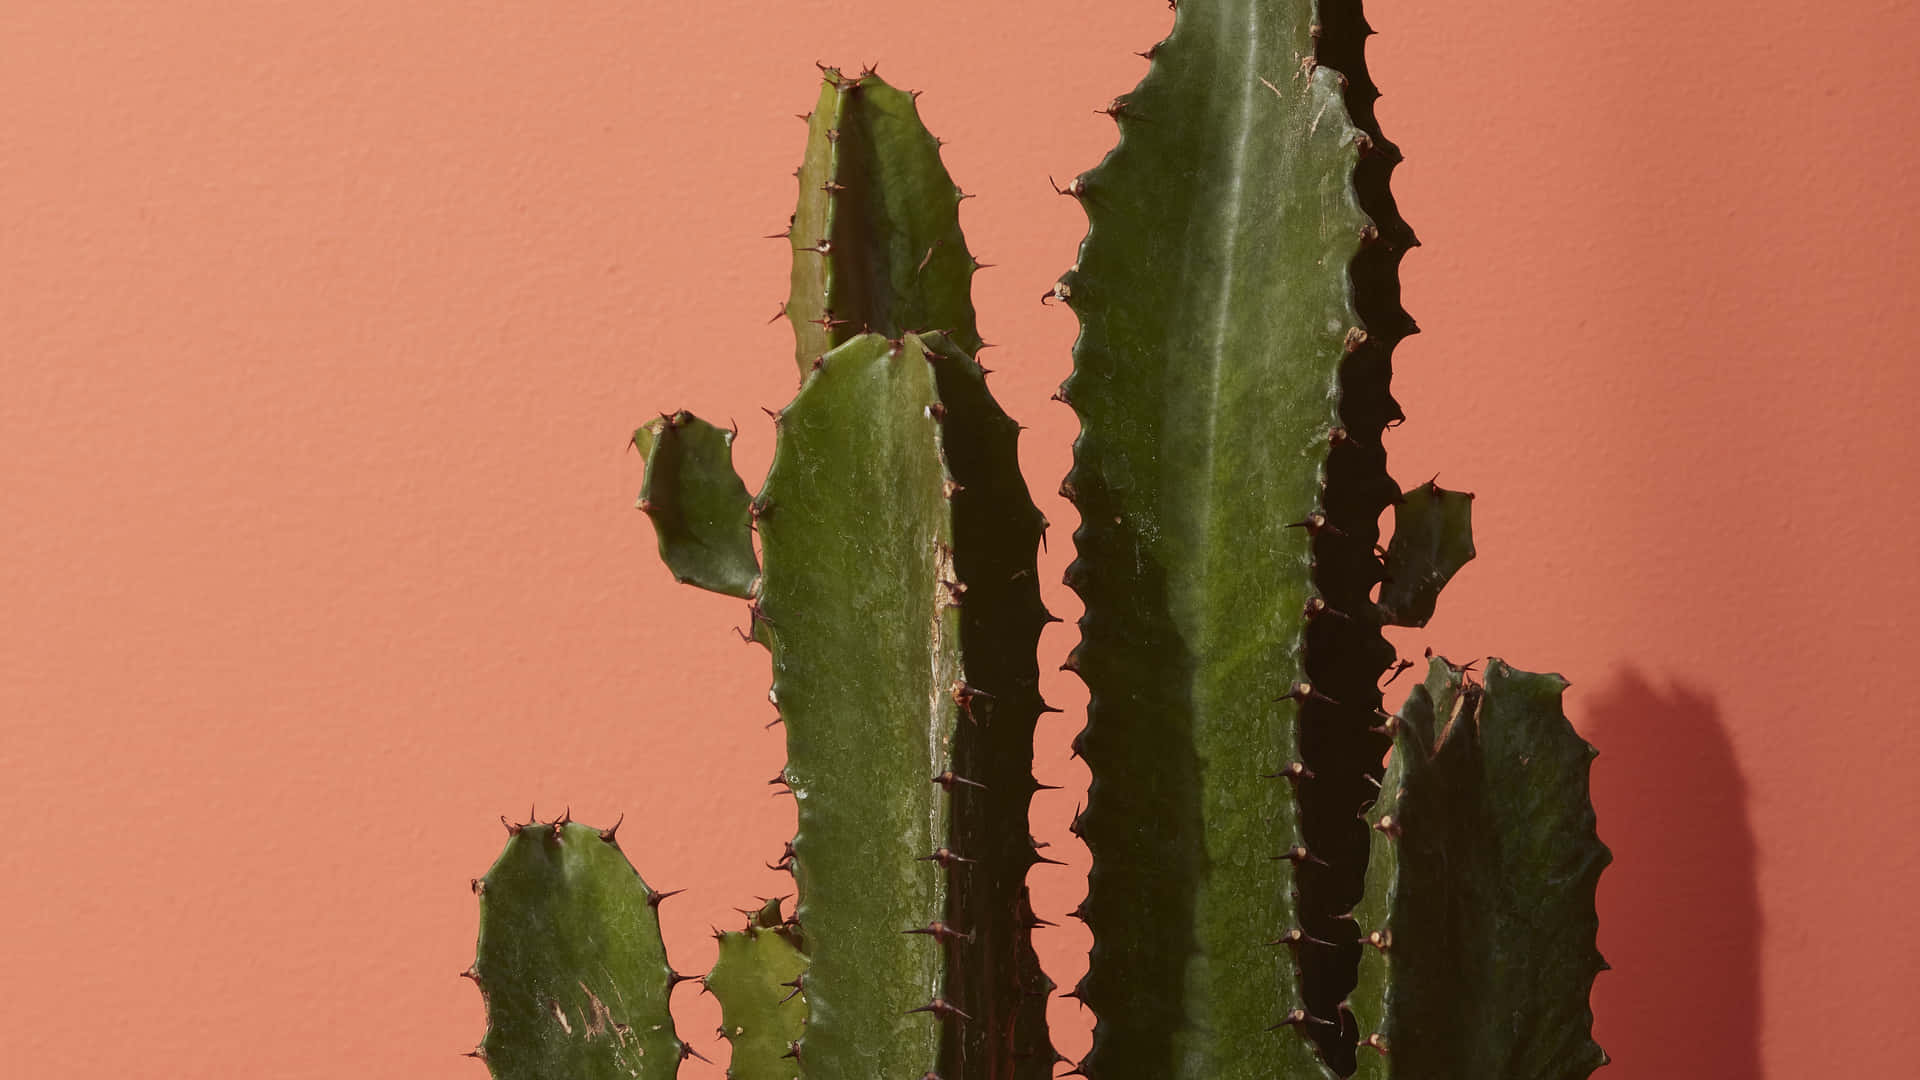 Bildniedlicher Kaktus Im Pinken Blumentopf